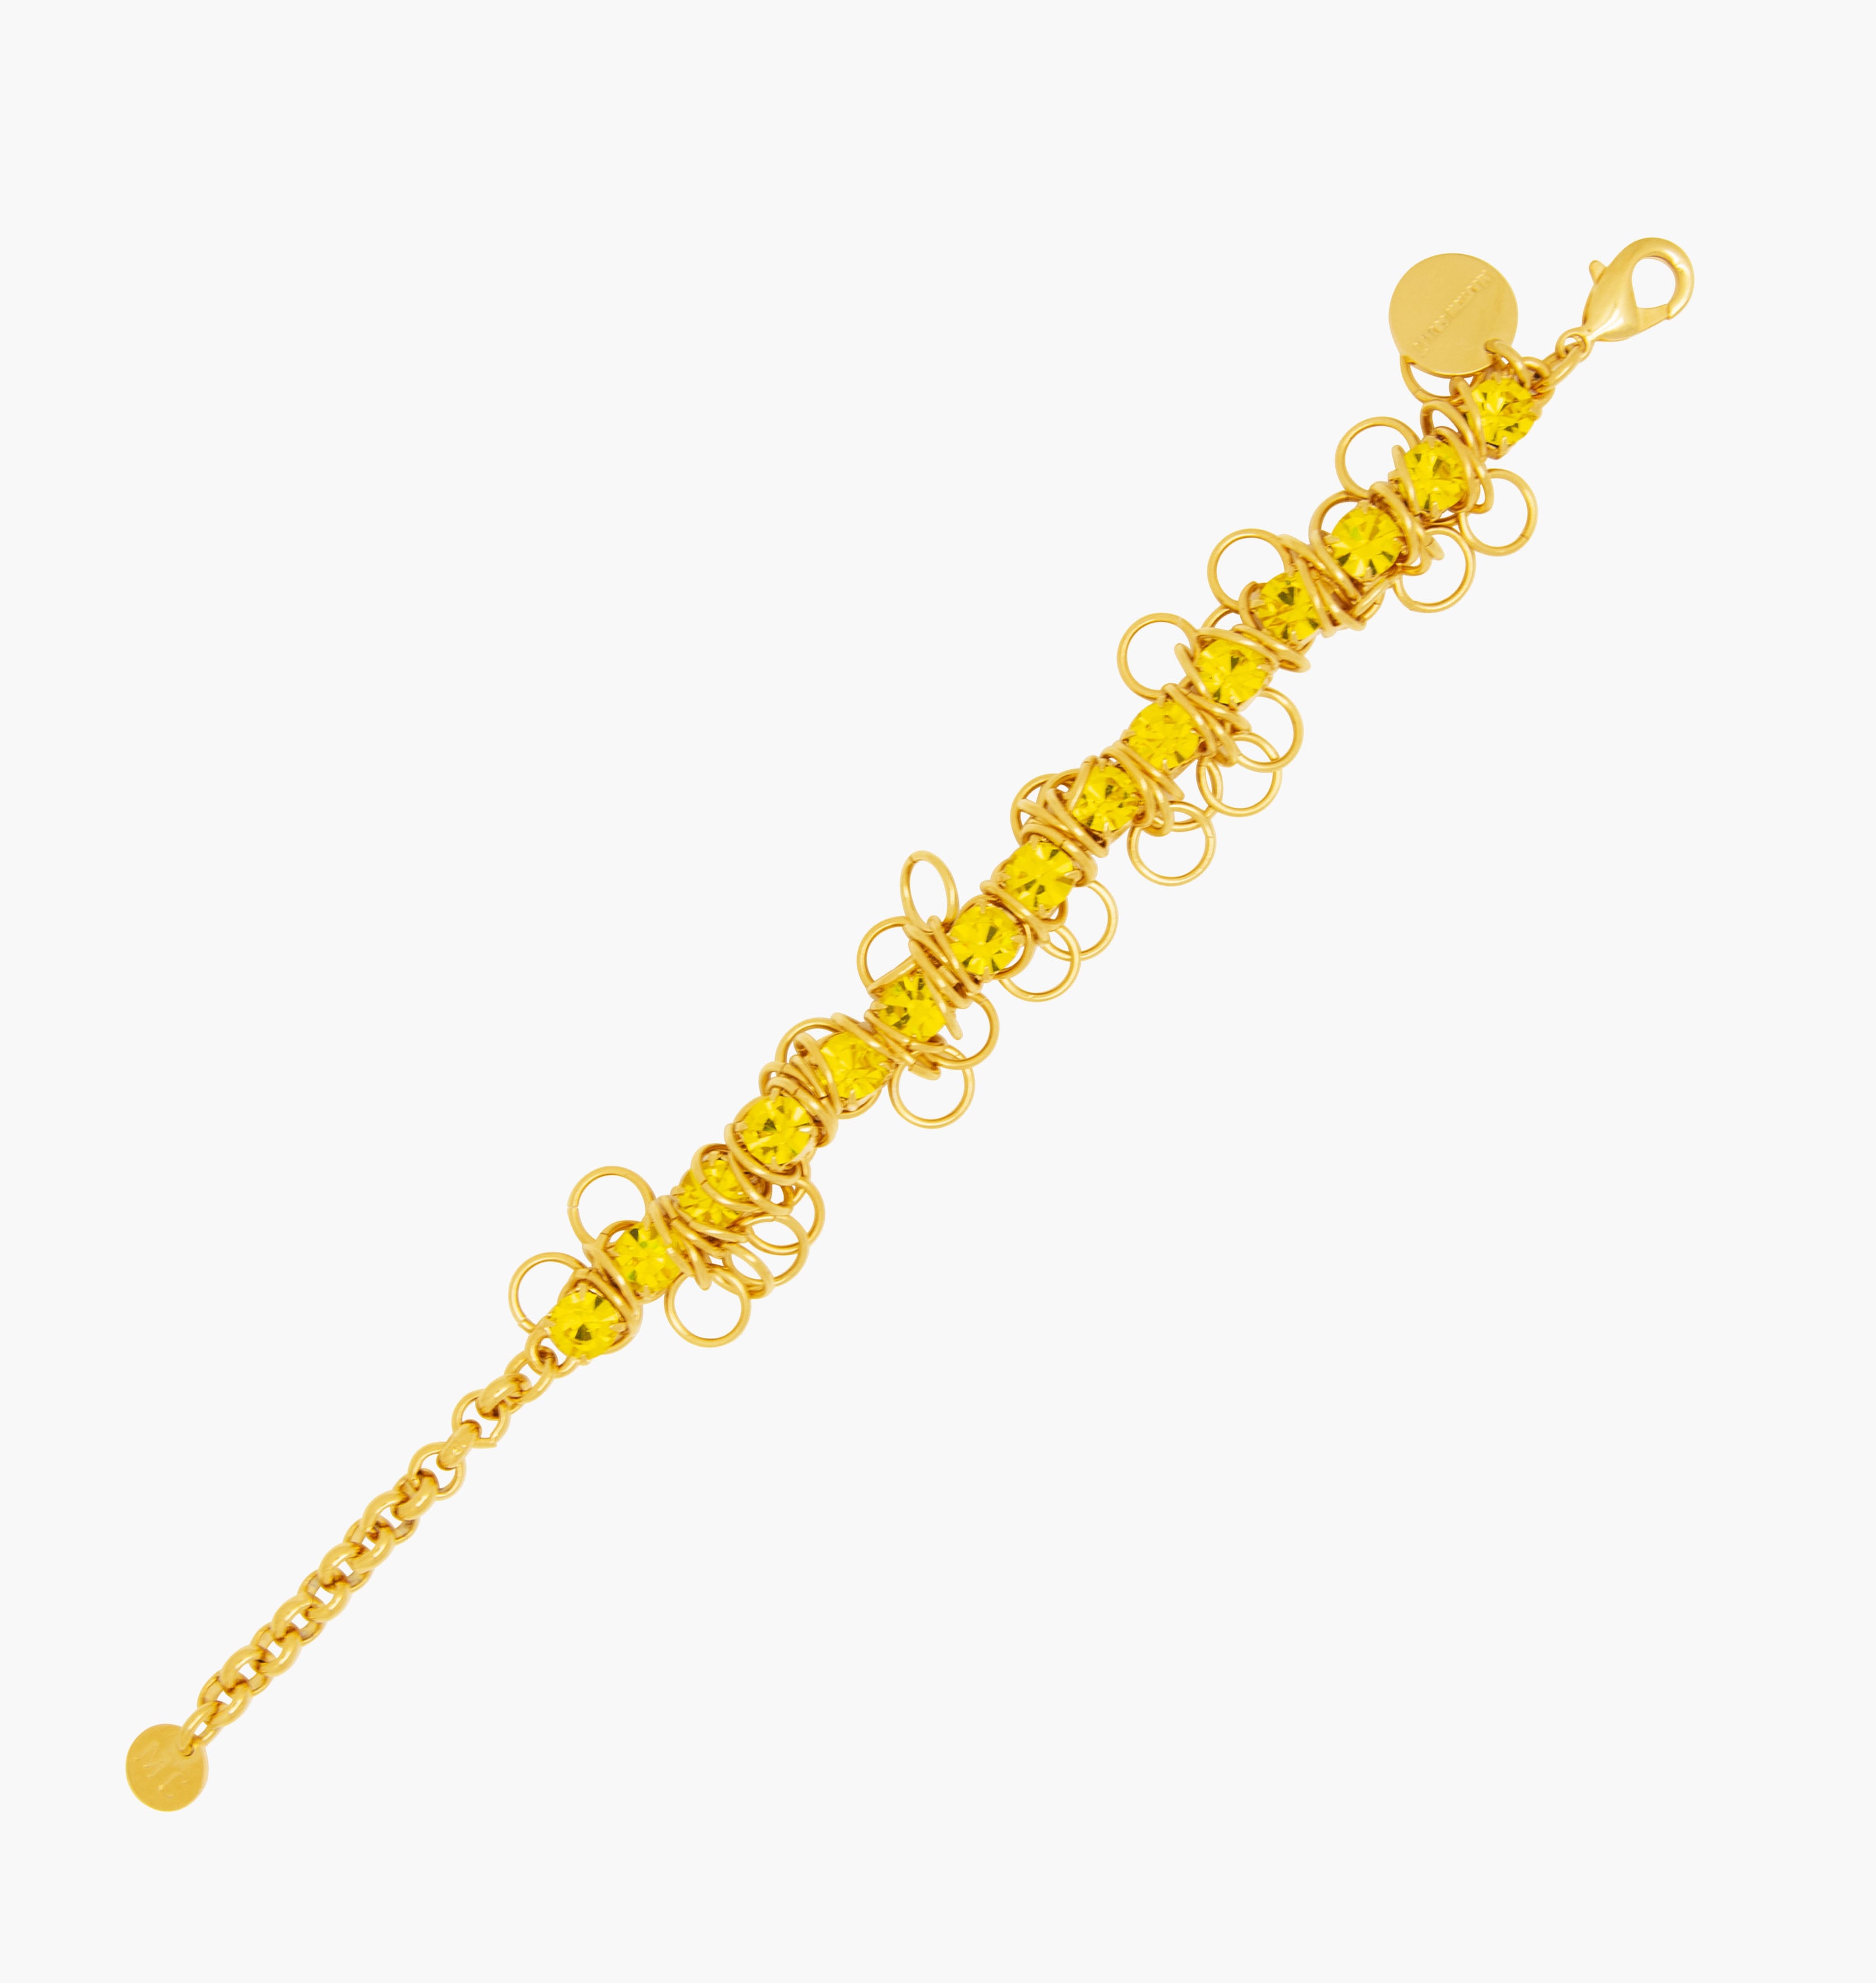 Bracelet DISCO Citrine - shop.mouttoncollet.com strass cristal jaune brillant, metal or doré, bijoux fantaisie fashion style vogue